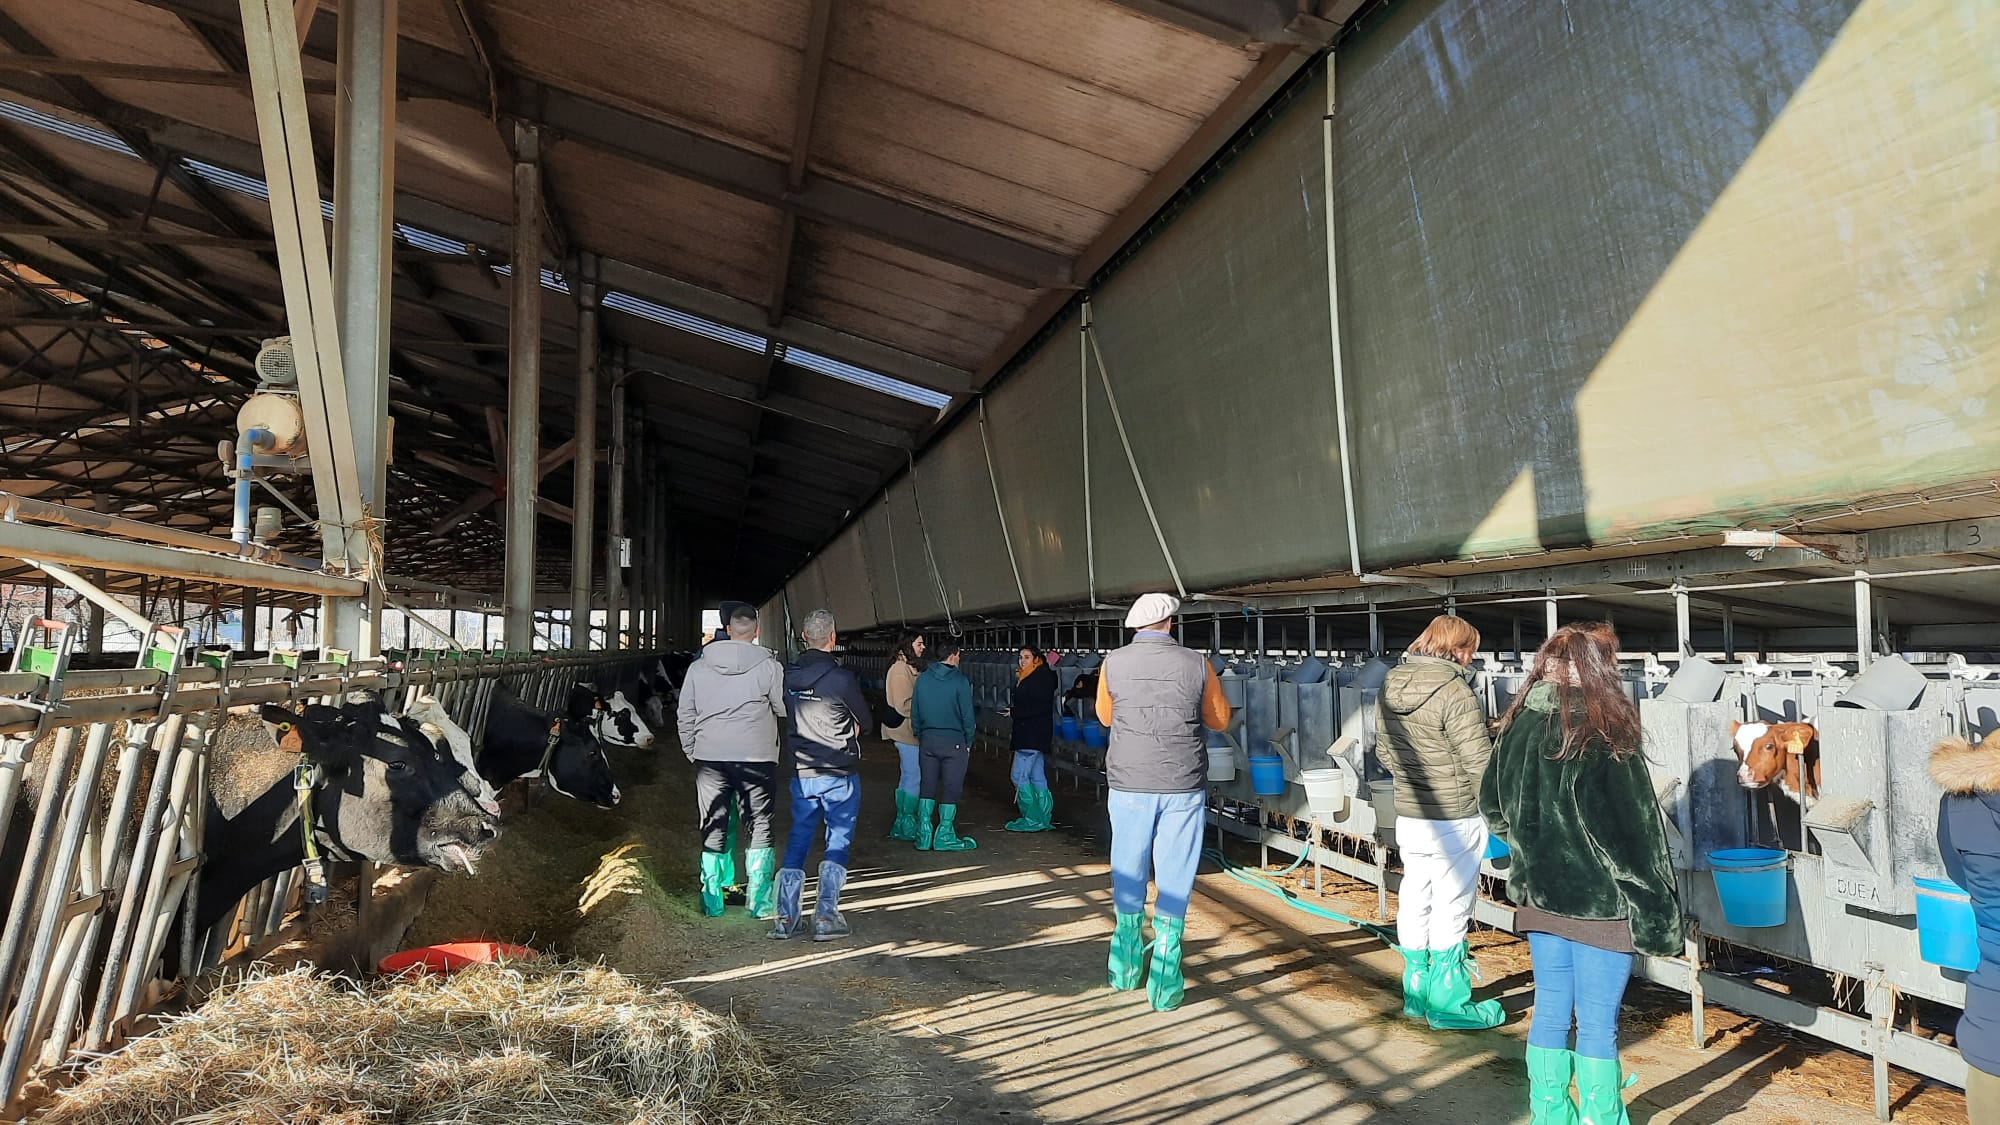 Visita presso stalla di vacche da latte con utilizzo di sensori SCR per il monitoraggio dell’attività ruminale - Az. Agr. Nordera